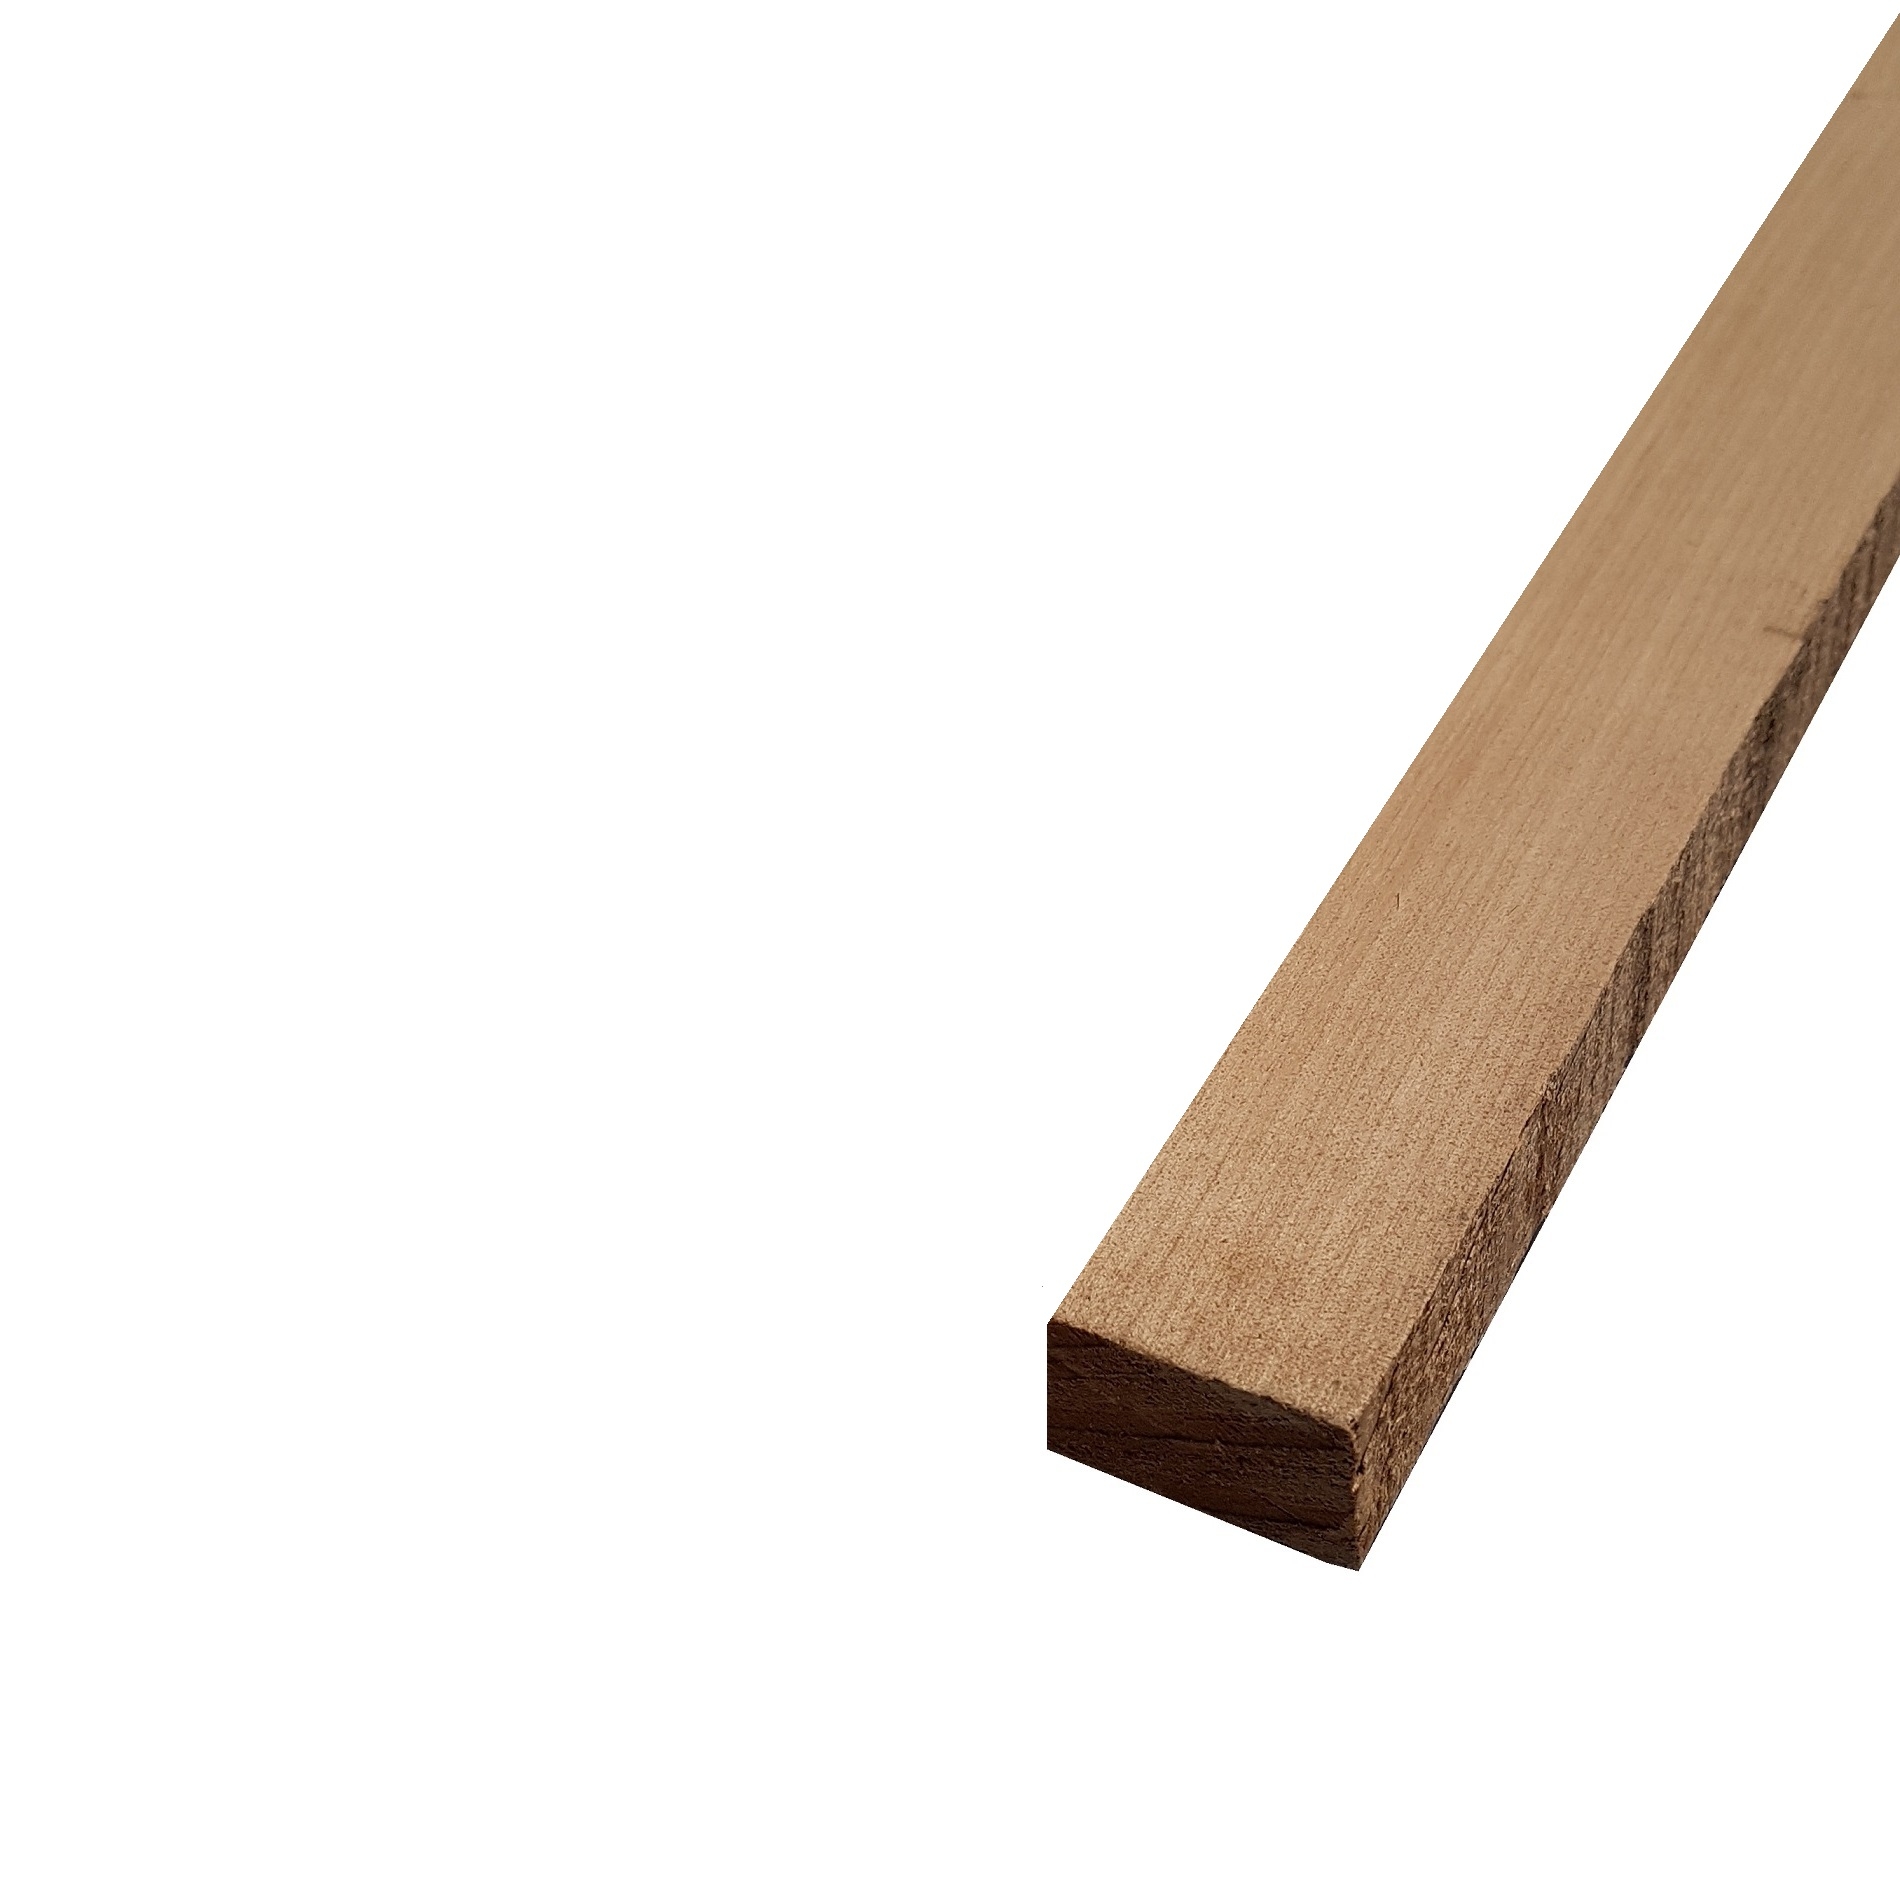 Listello legno di Acero Pacific Coast Maple Calibrato grezzo mm 38 x Varie Misure x 1200